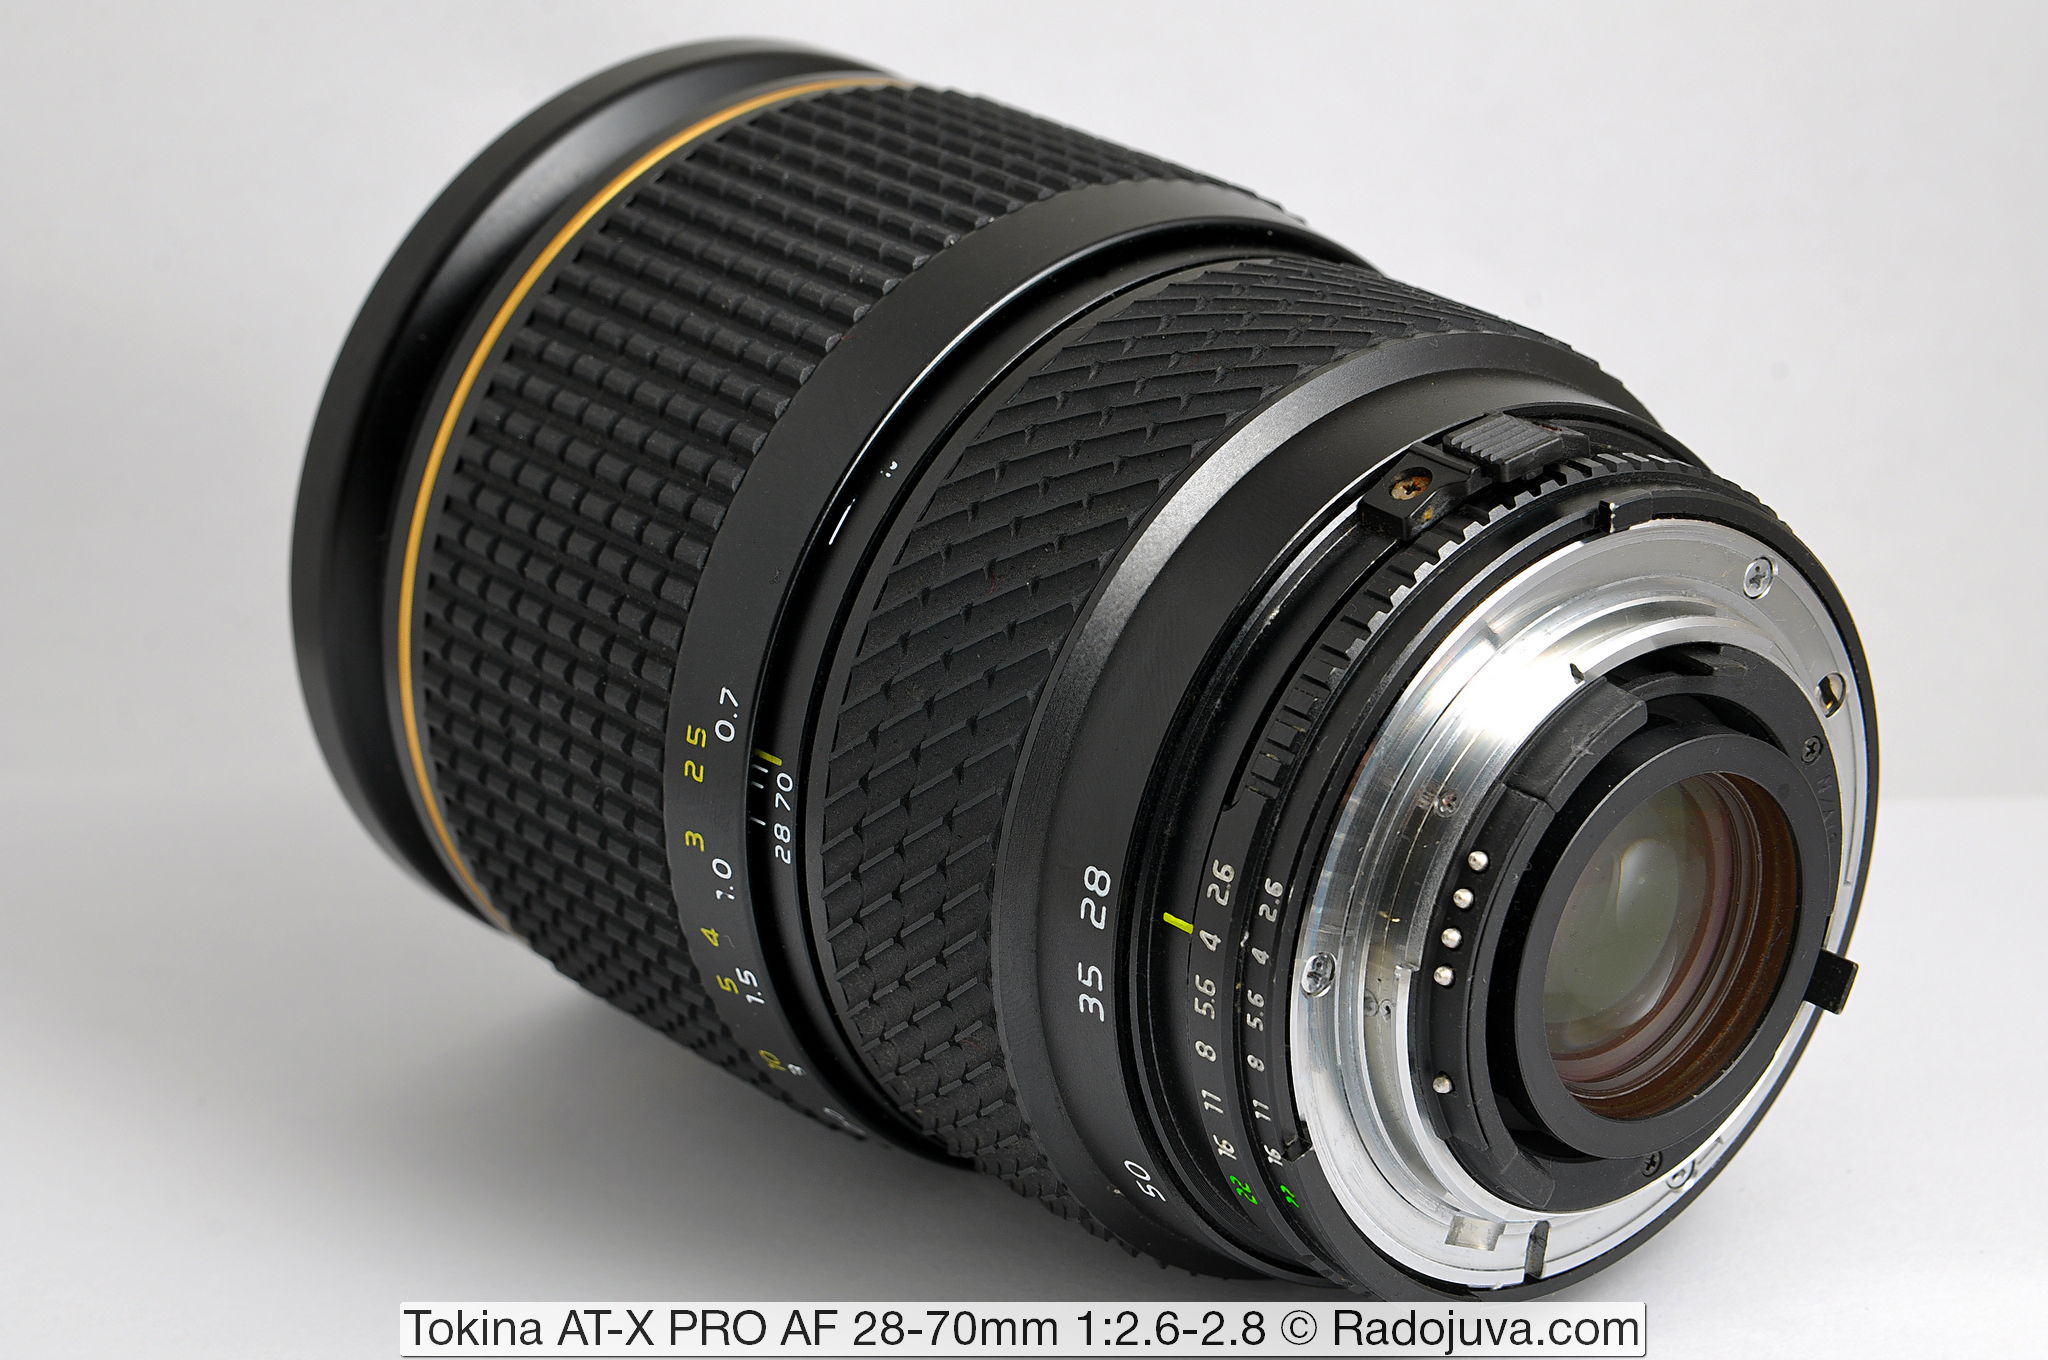 angst verzonden Donker worden Review of Tokina AT-X PRO AF 28-70mm F / 2.6-2.8 (Tokina AT-X 270 AF PRO) |  Happy